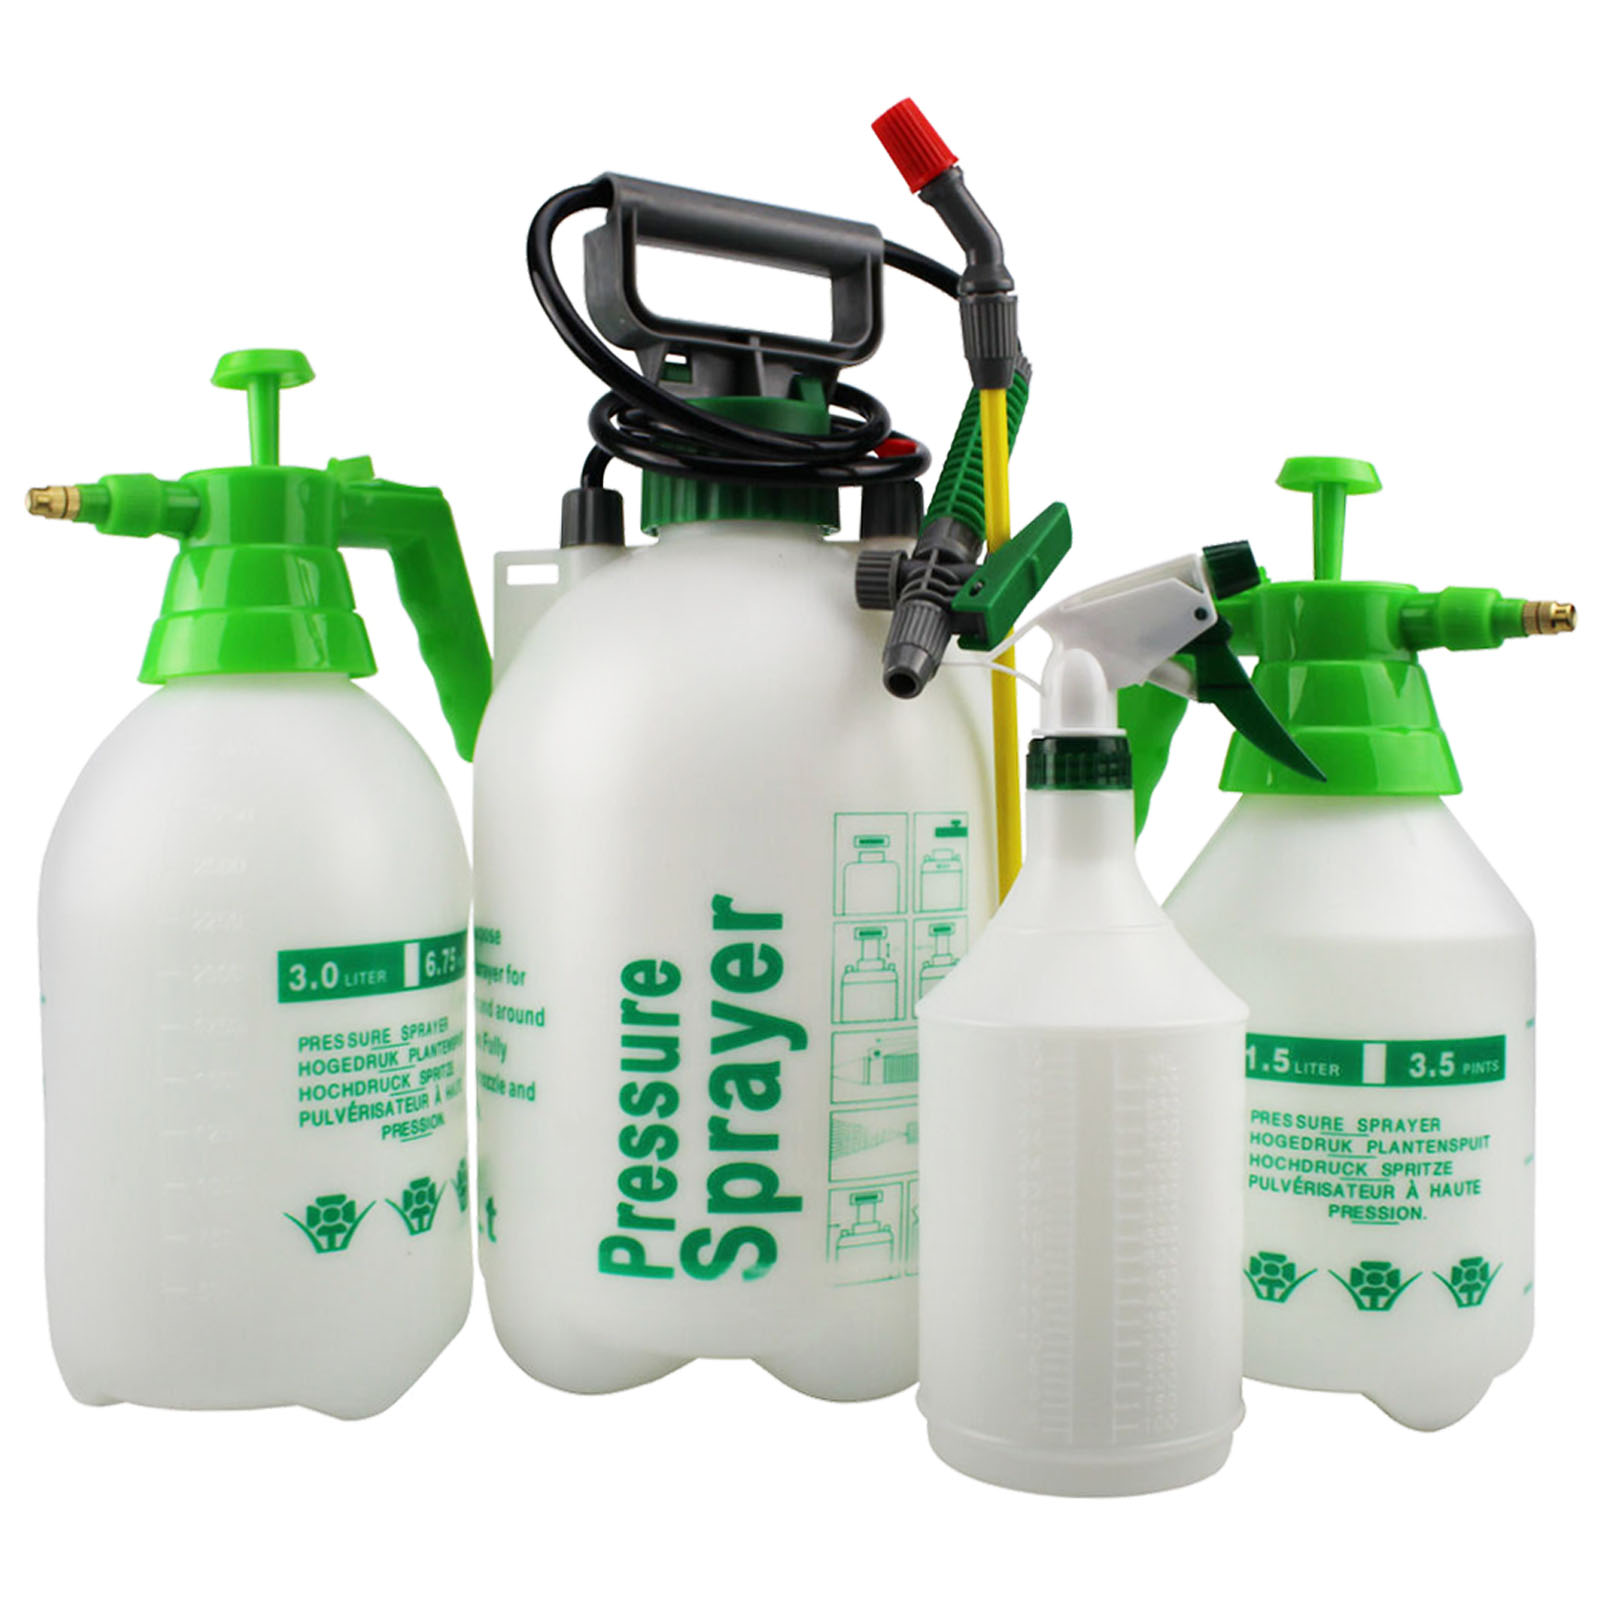 Hand Pressure Sprayer Pump Action Garden Weed Killer Water Portable Spray Hose | eBay